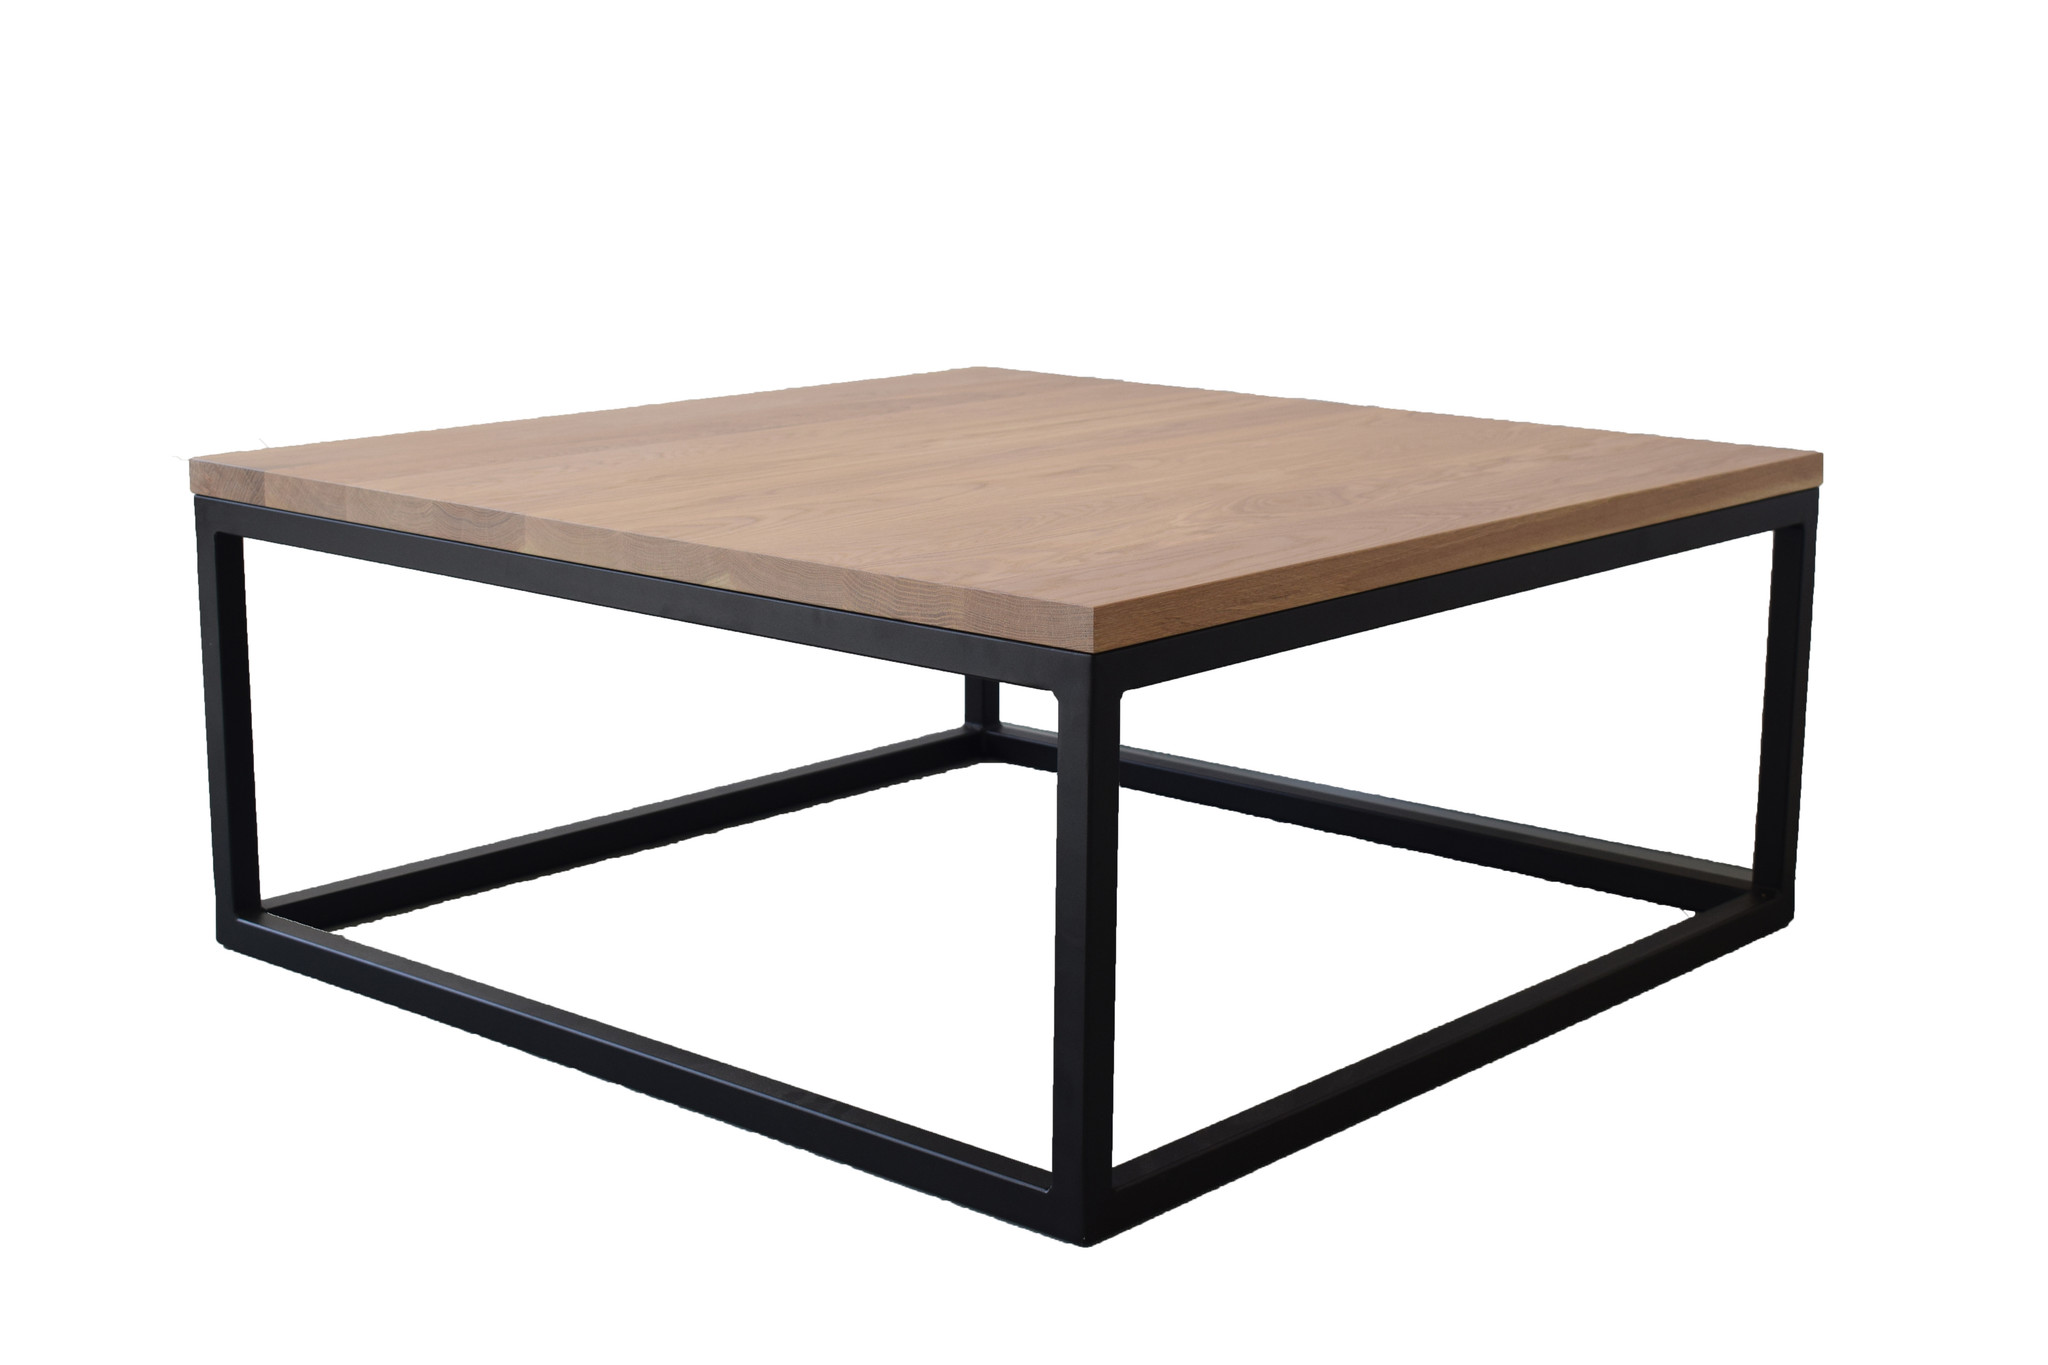 Weglaten schreeuw cassette Eiken salontafel vierkant met zwart stalen frame | 100x100cm | Massief -  Steiken meubelen